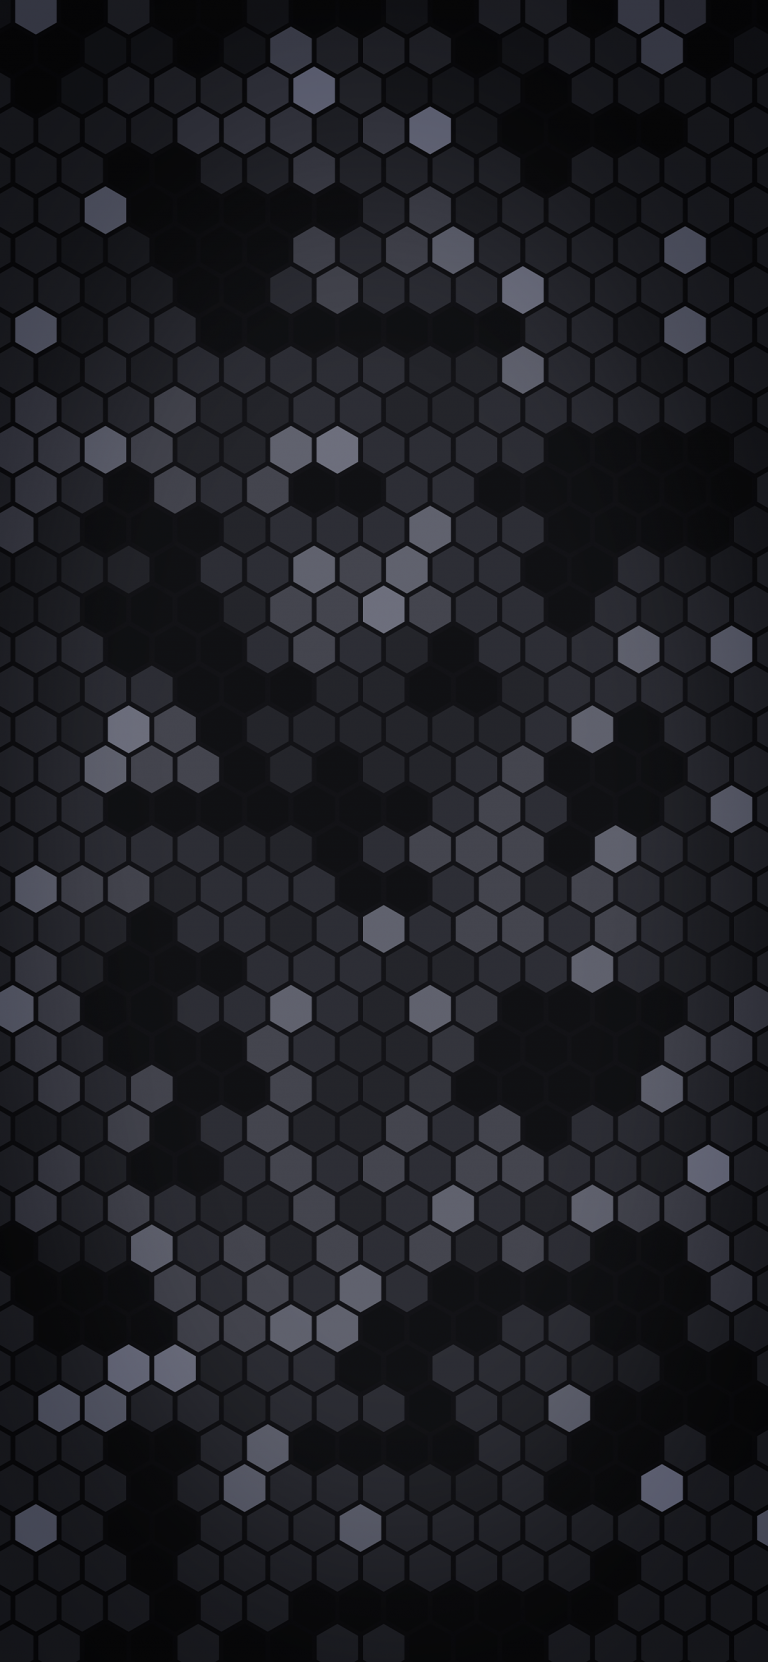 Swarm2-dark-pattern-iphone-wallpaper-arthur-schrinemacher-768×1662